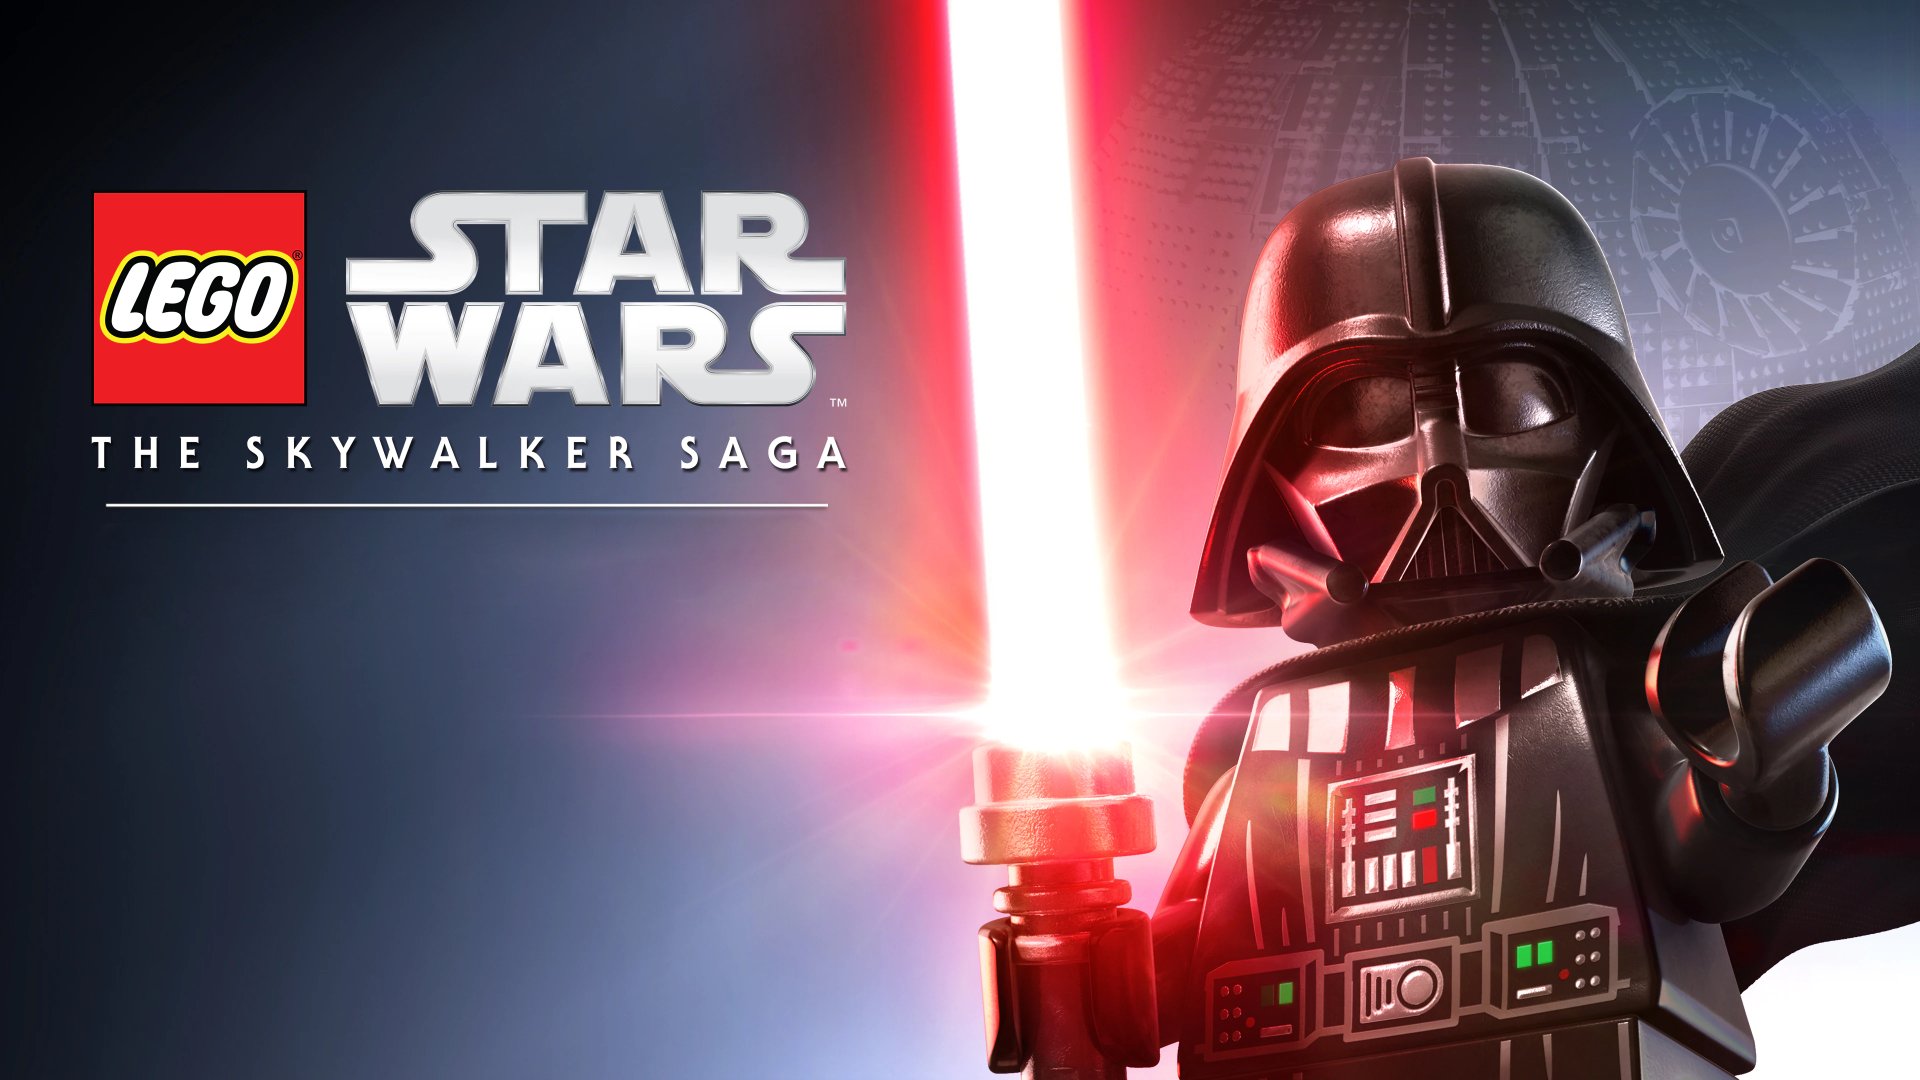 4K Lego Star Wars: The Skywalker Saga Wallpaper and Background Image